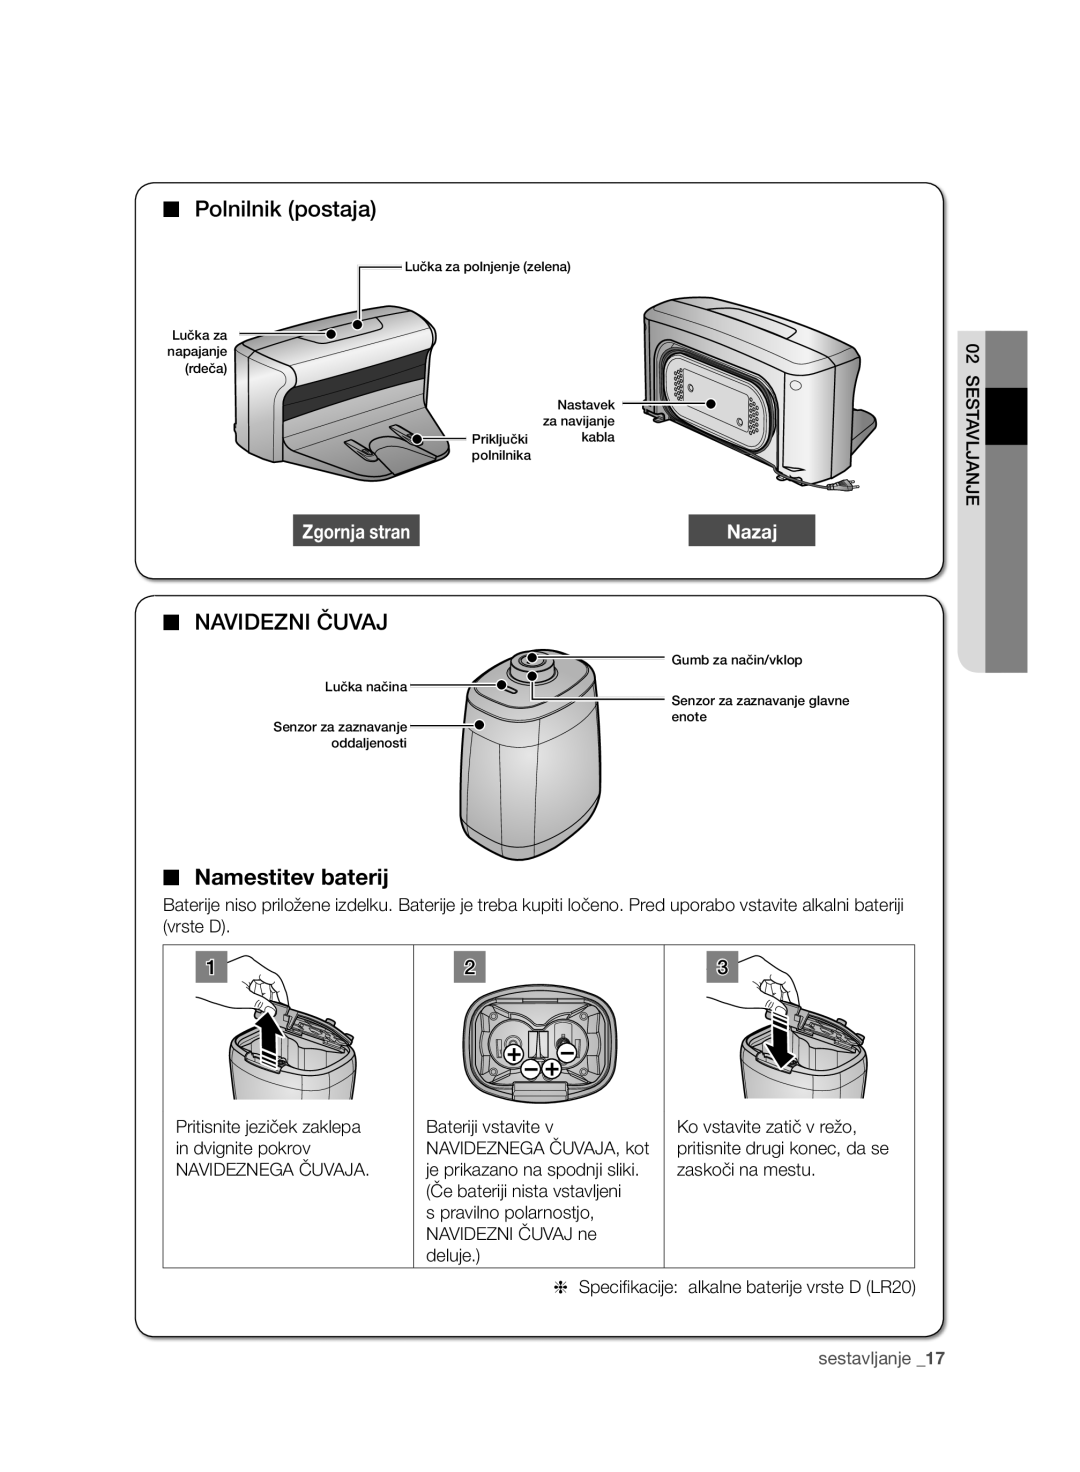 Samsung VCR8950L3B/XEG manual Polnilnik postaja, Navidezni Čuvaj, Namestitev baterij, Zgornja stran, Nazaj, sestavljanje 